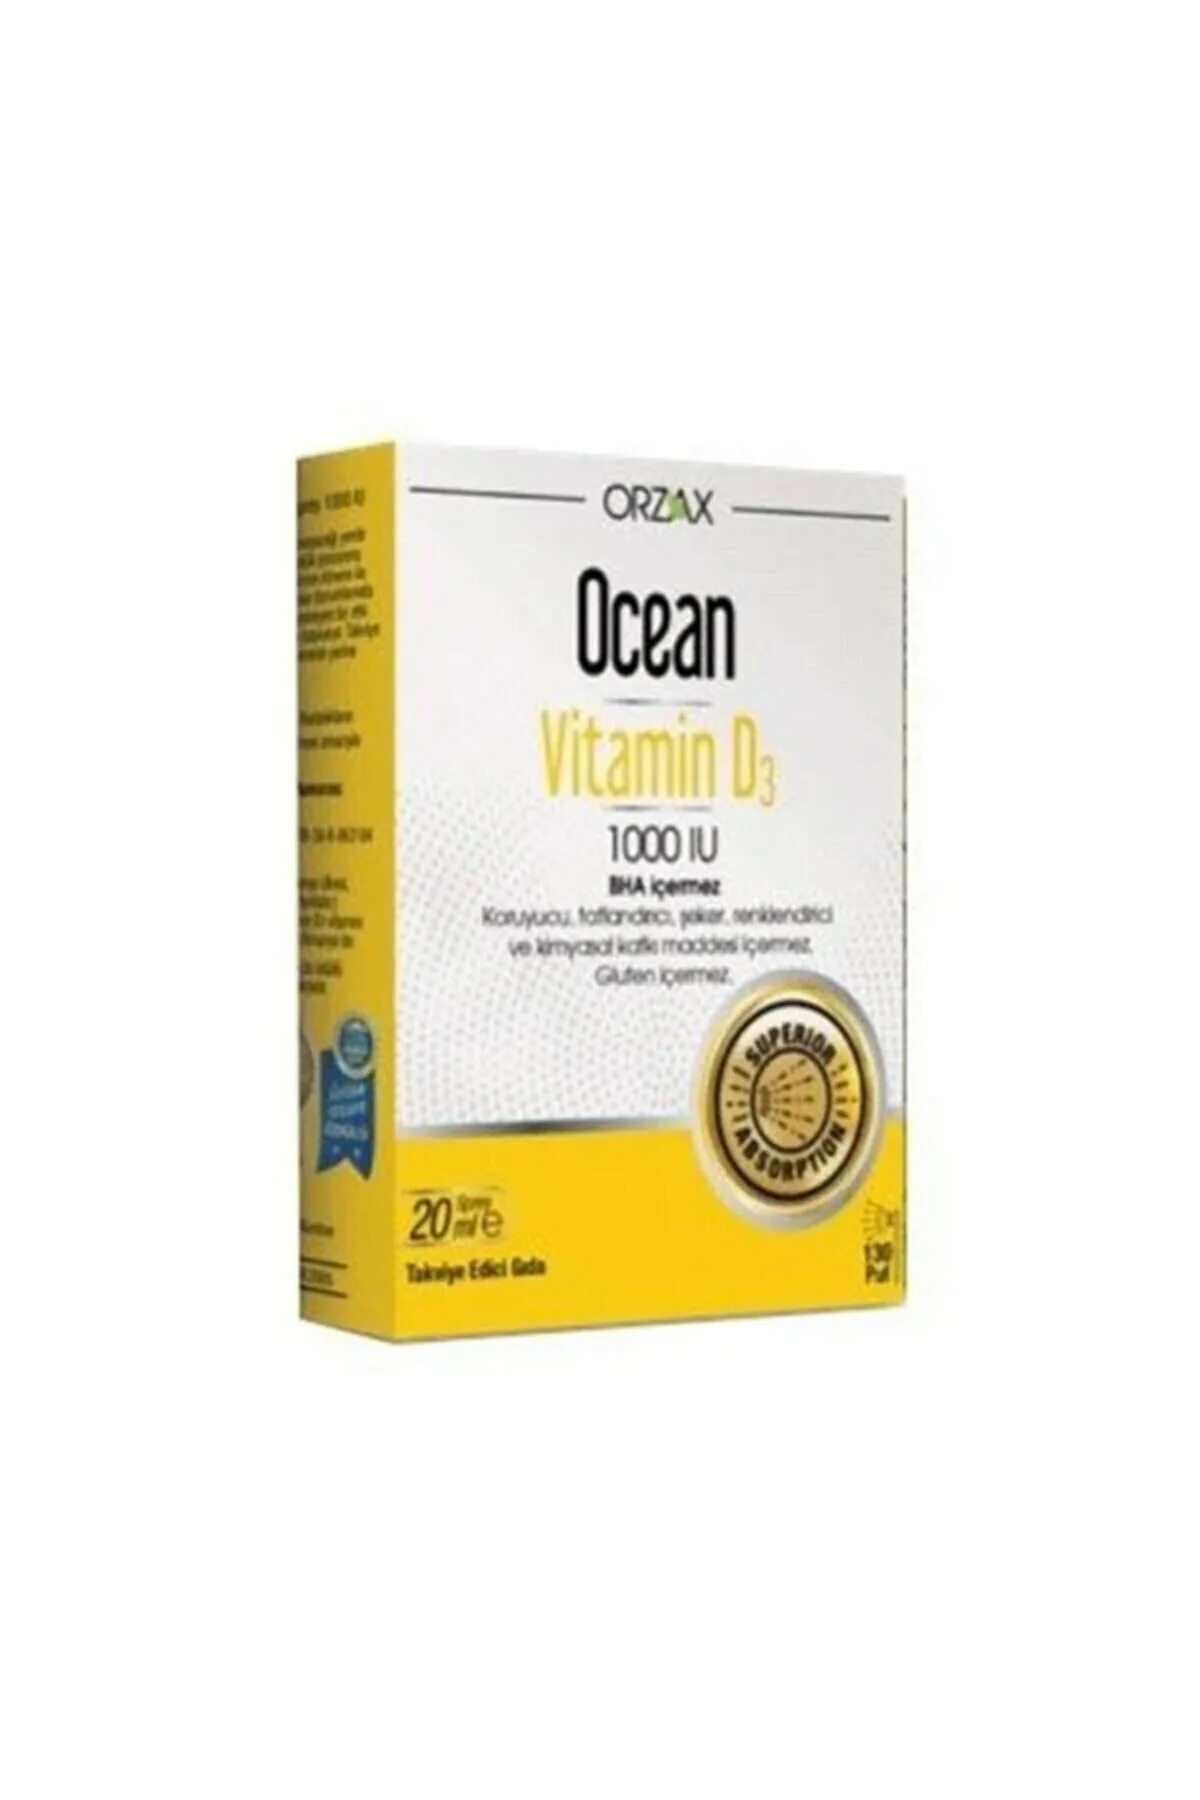 Vitamin d3 400 IU Orzax. Ocean витамин д3 400 IU. Orzax Ocean Vitamin d3 1000 IU. Ocean Vitamin d3 400 IU инструкция.